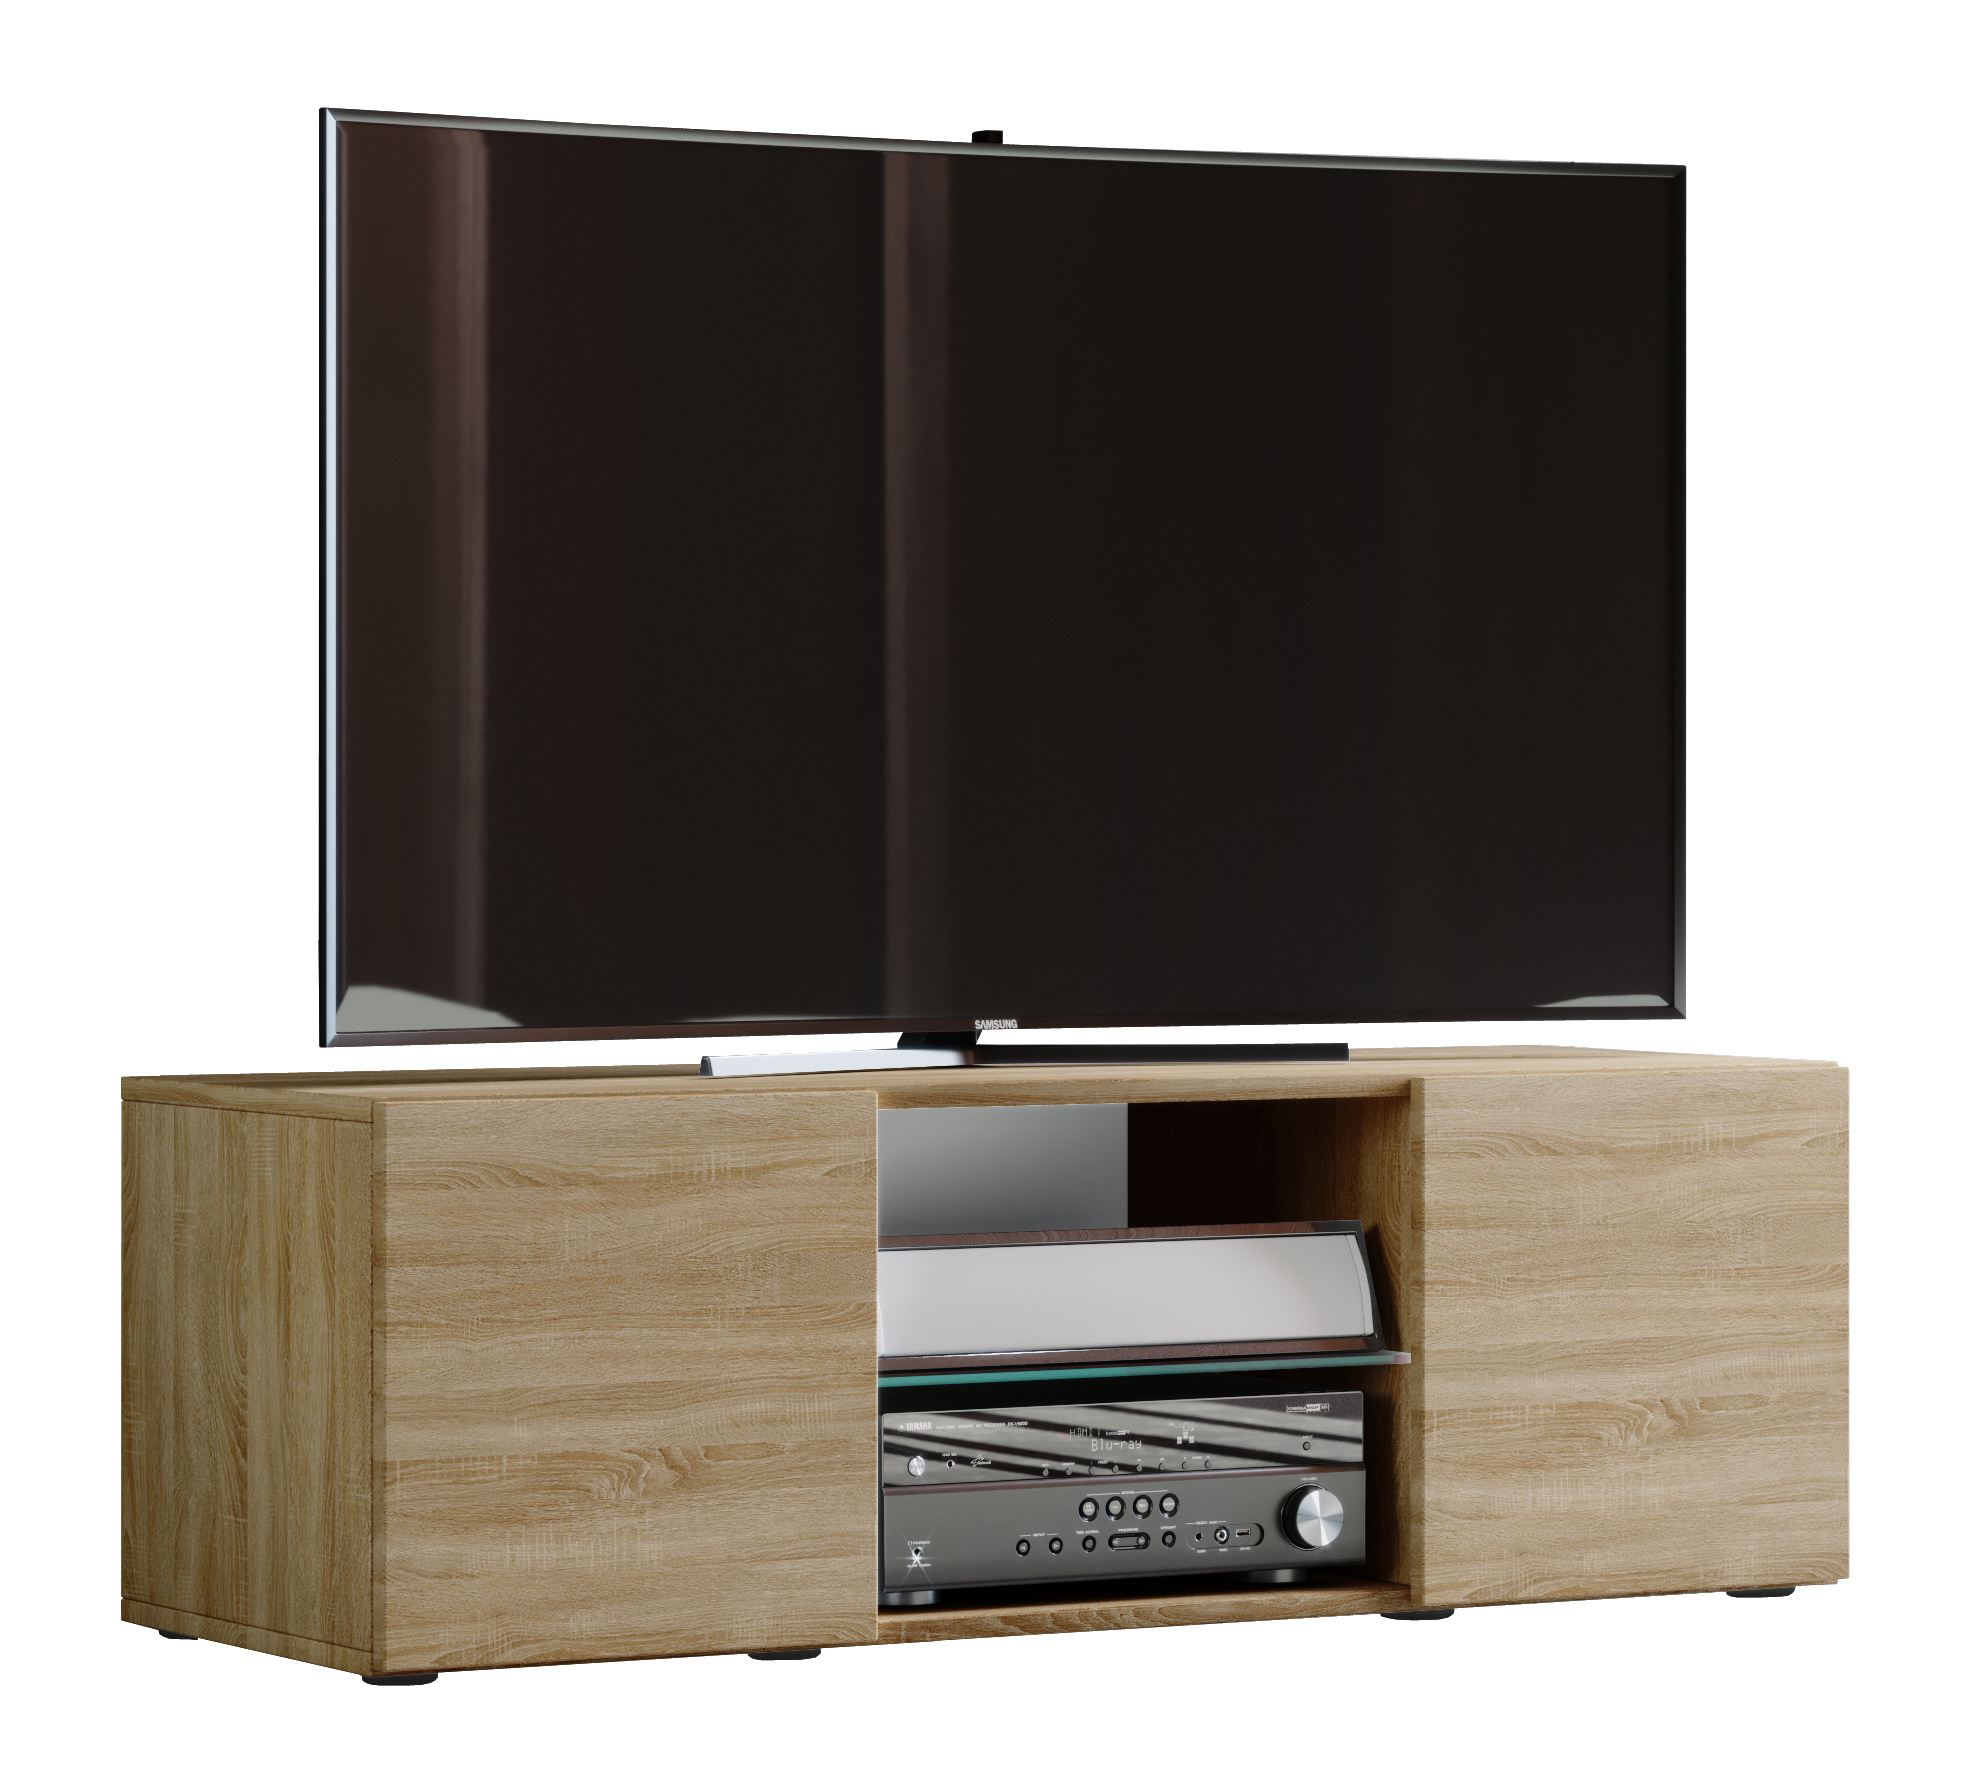 VCM TV Lowboard Fernseh Schrank Möbel Tisch Holz Sideboard Medien Rack Bank Sonoma-eiche 40 x 95 x 36 cm Lowina 